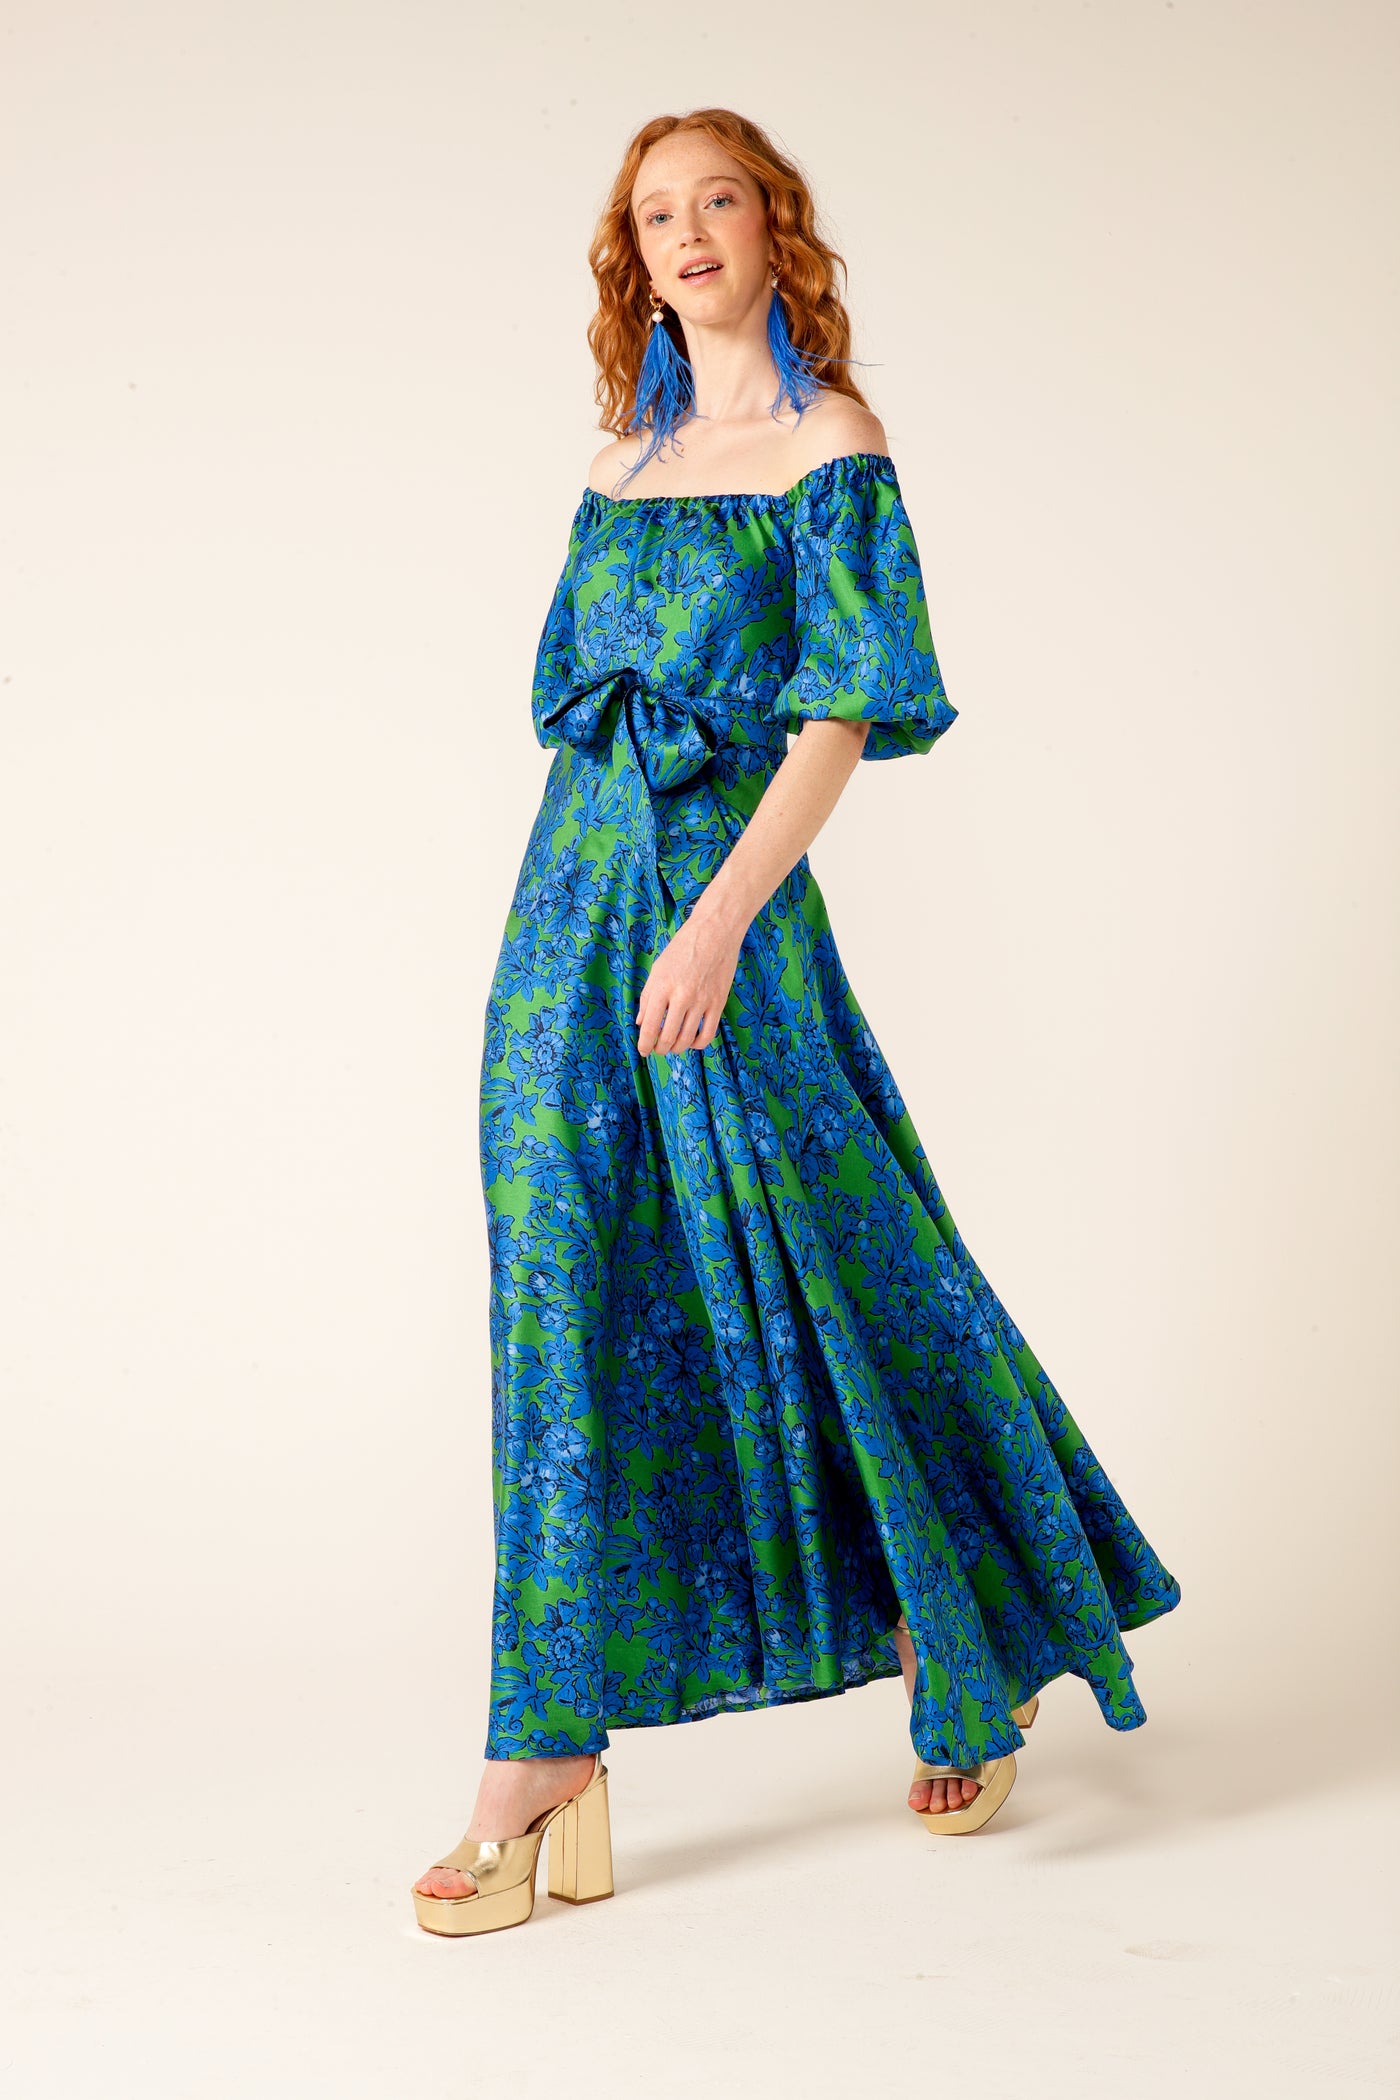 Aquamarine Clips Gown - Iris Emerald